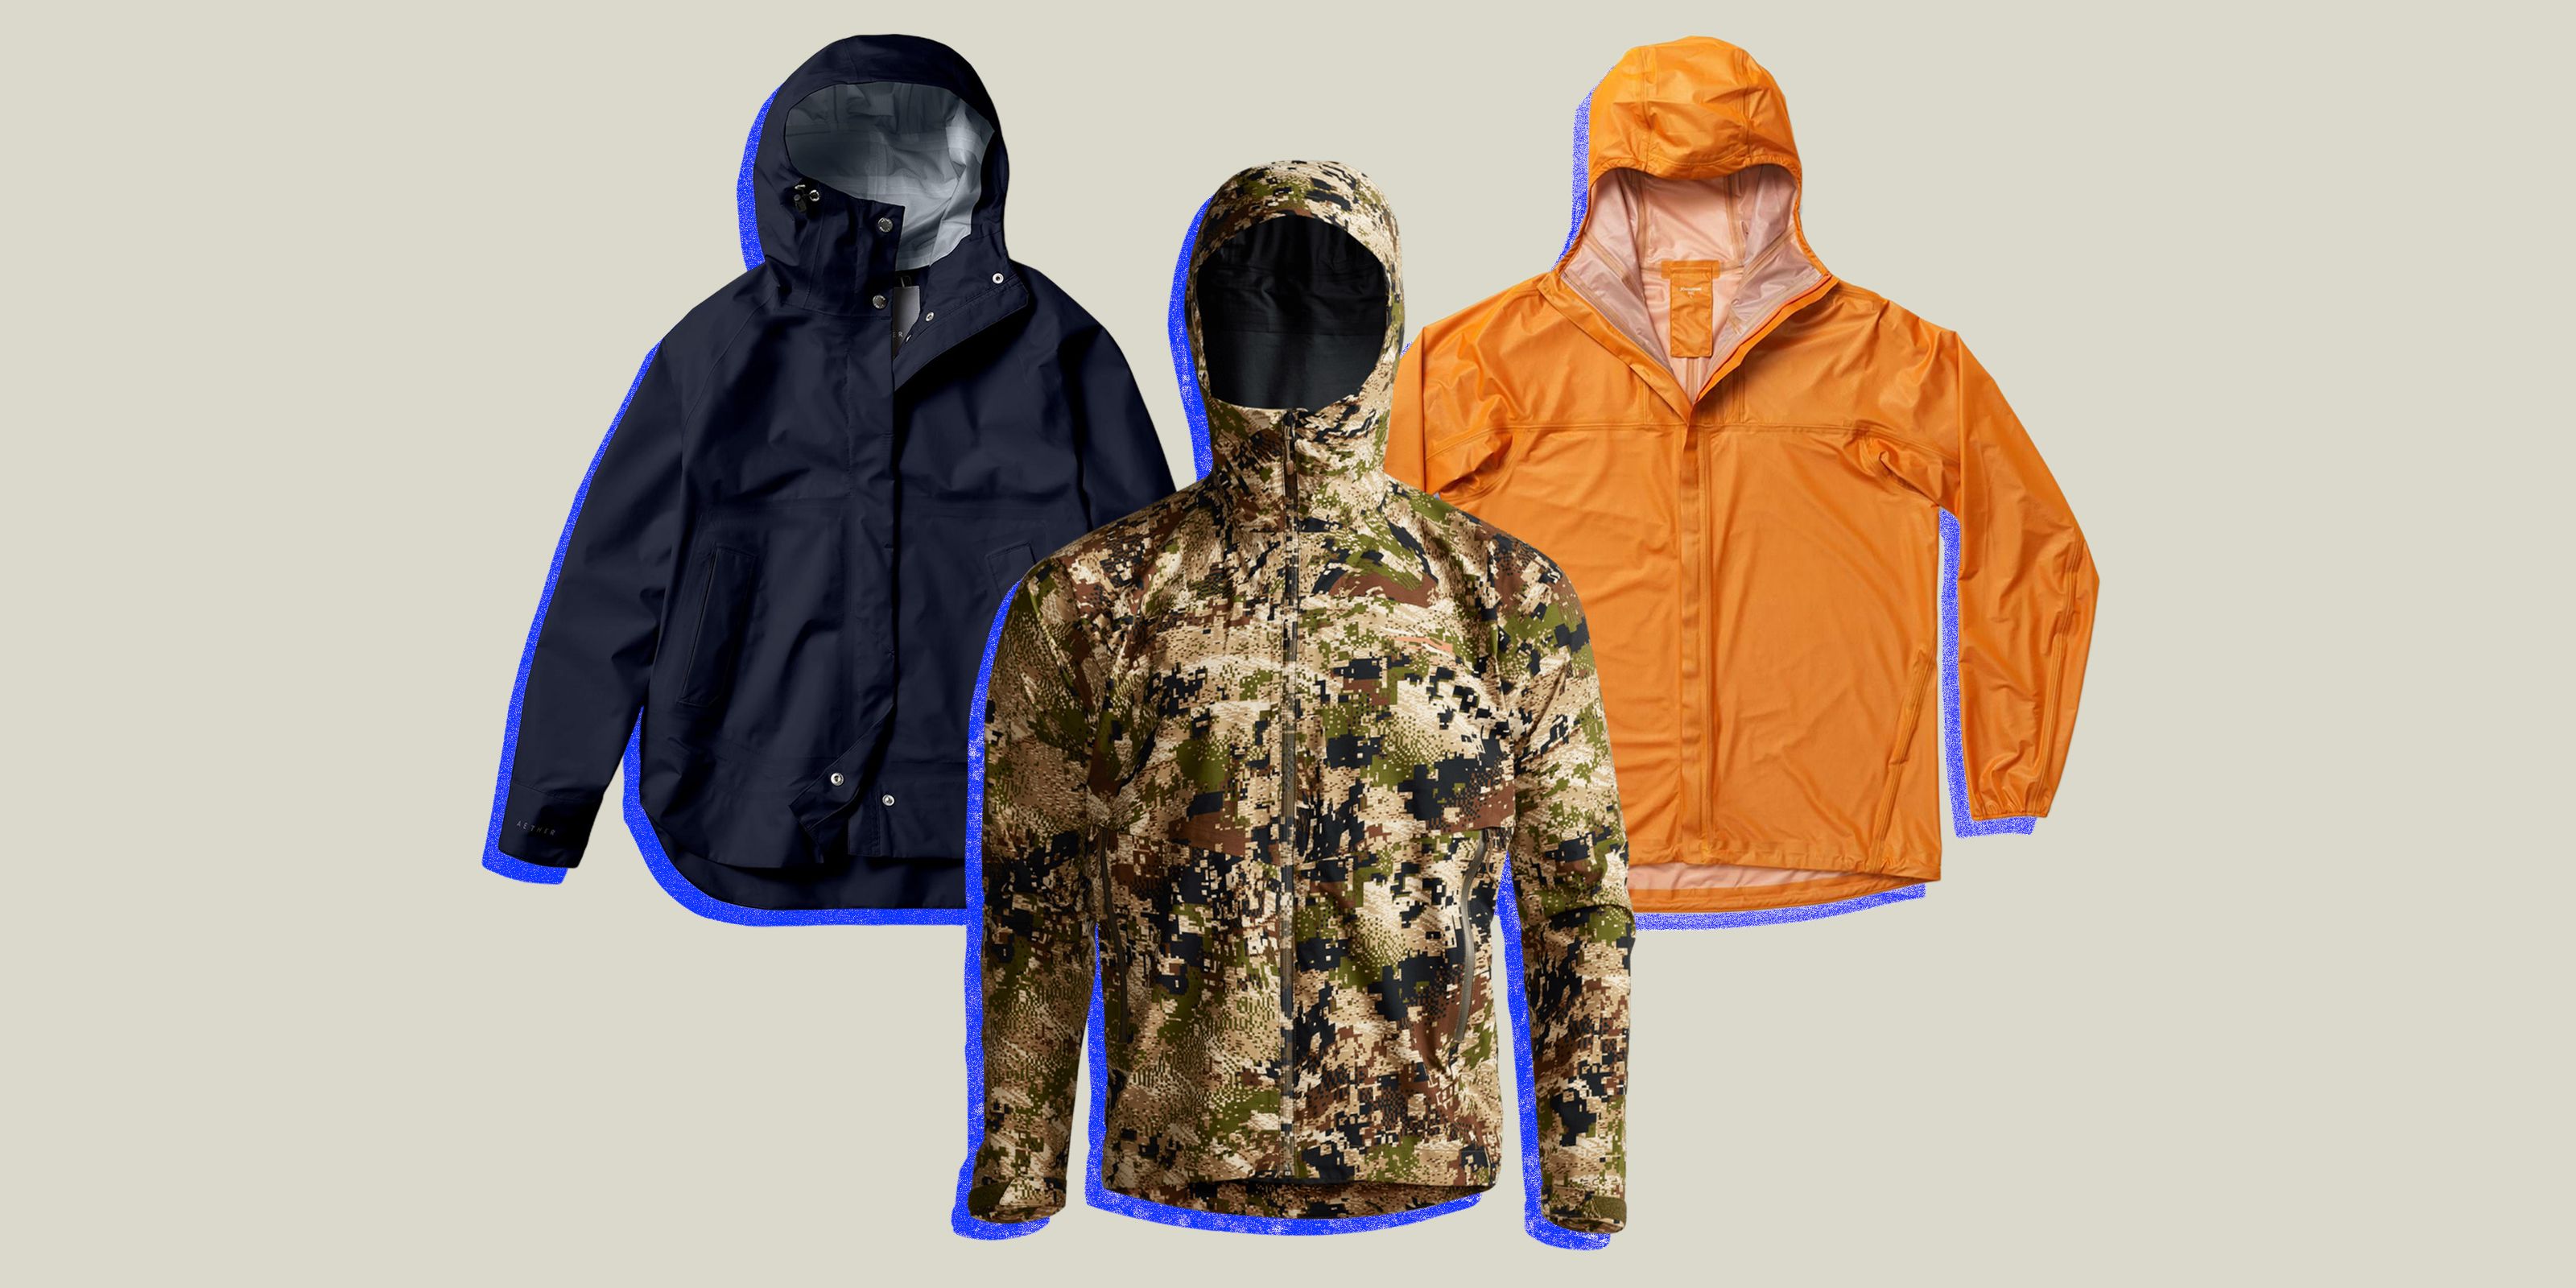 Rain Jacket: Size L, Yellow, Nylon & PVC